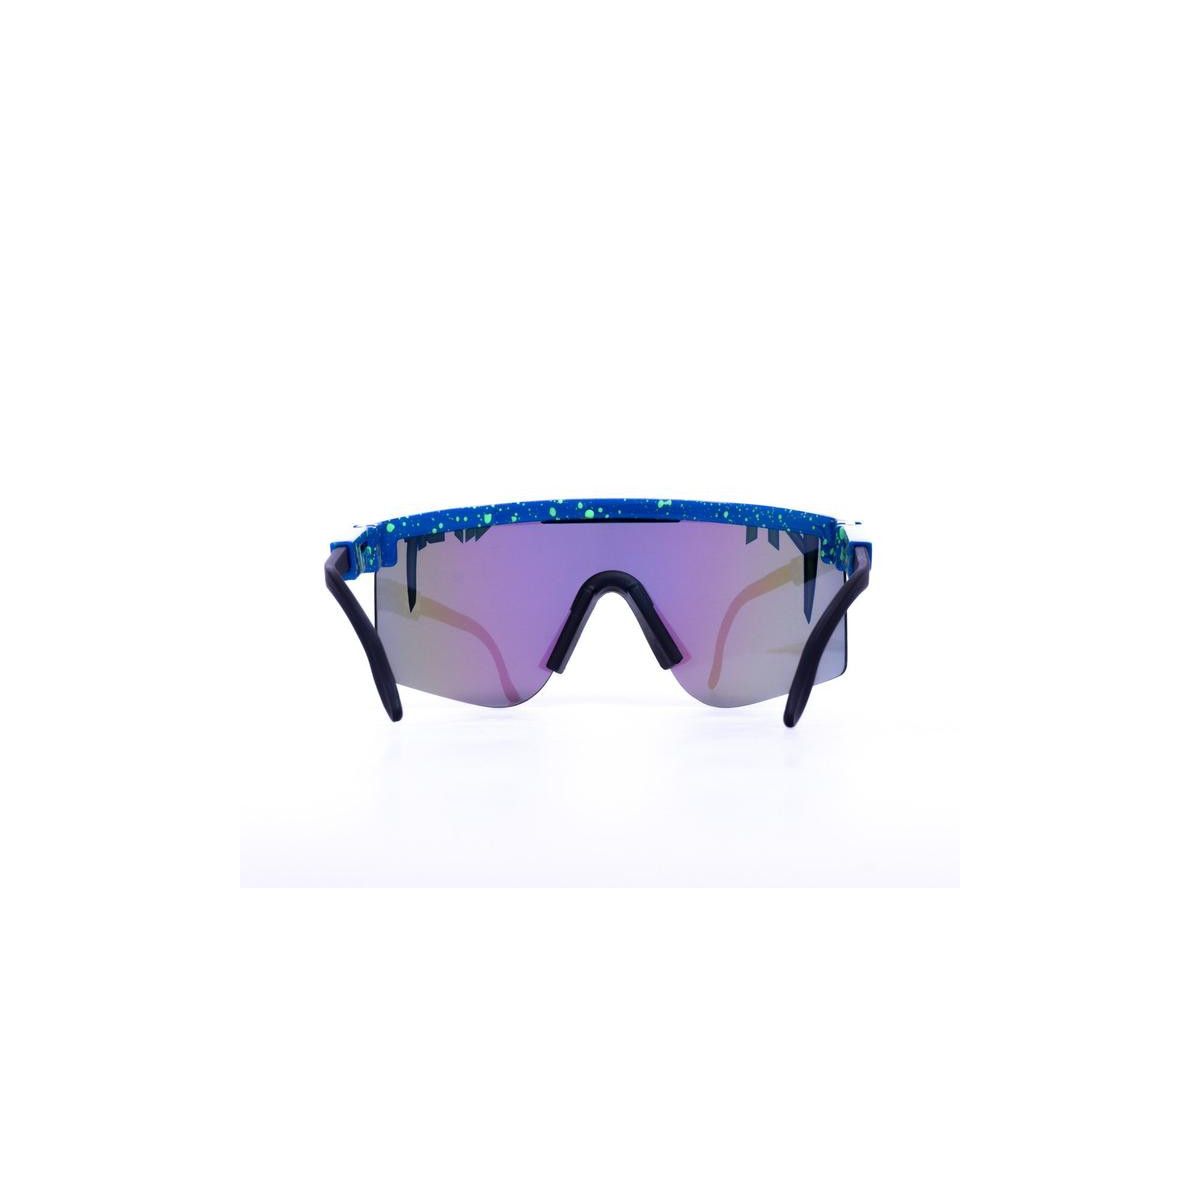 pit viper sunglasses españa | tienda oficial Pit Viper